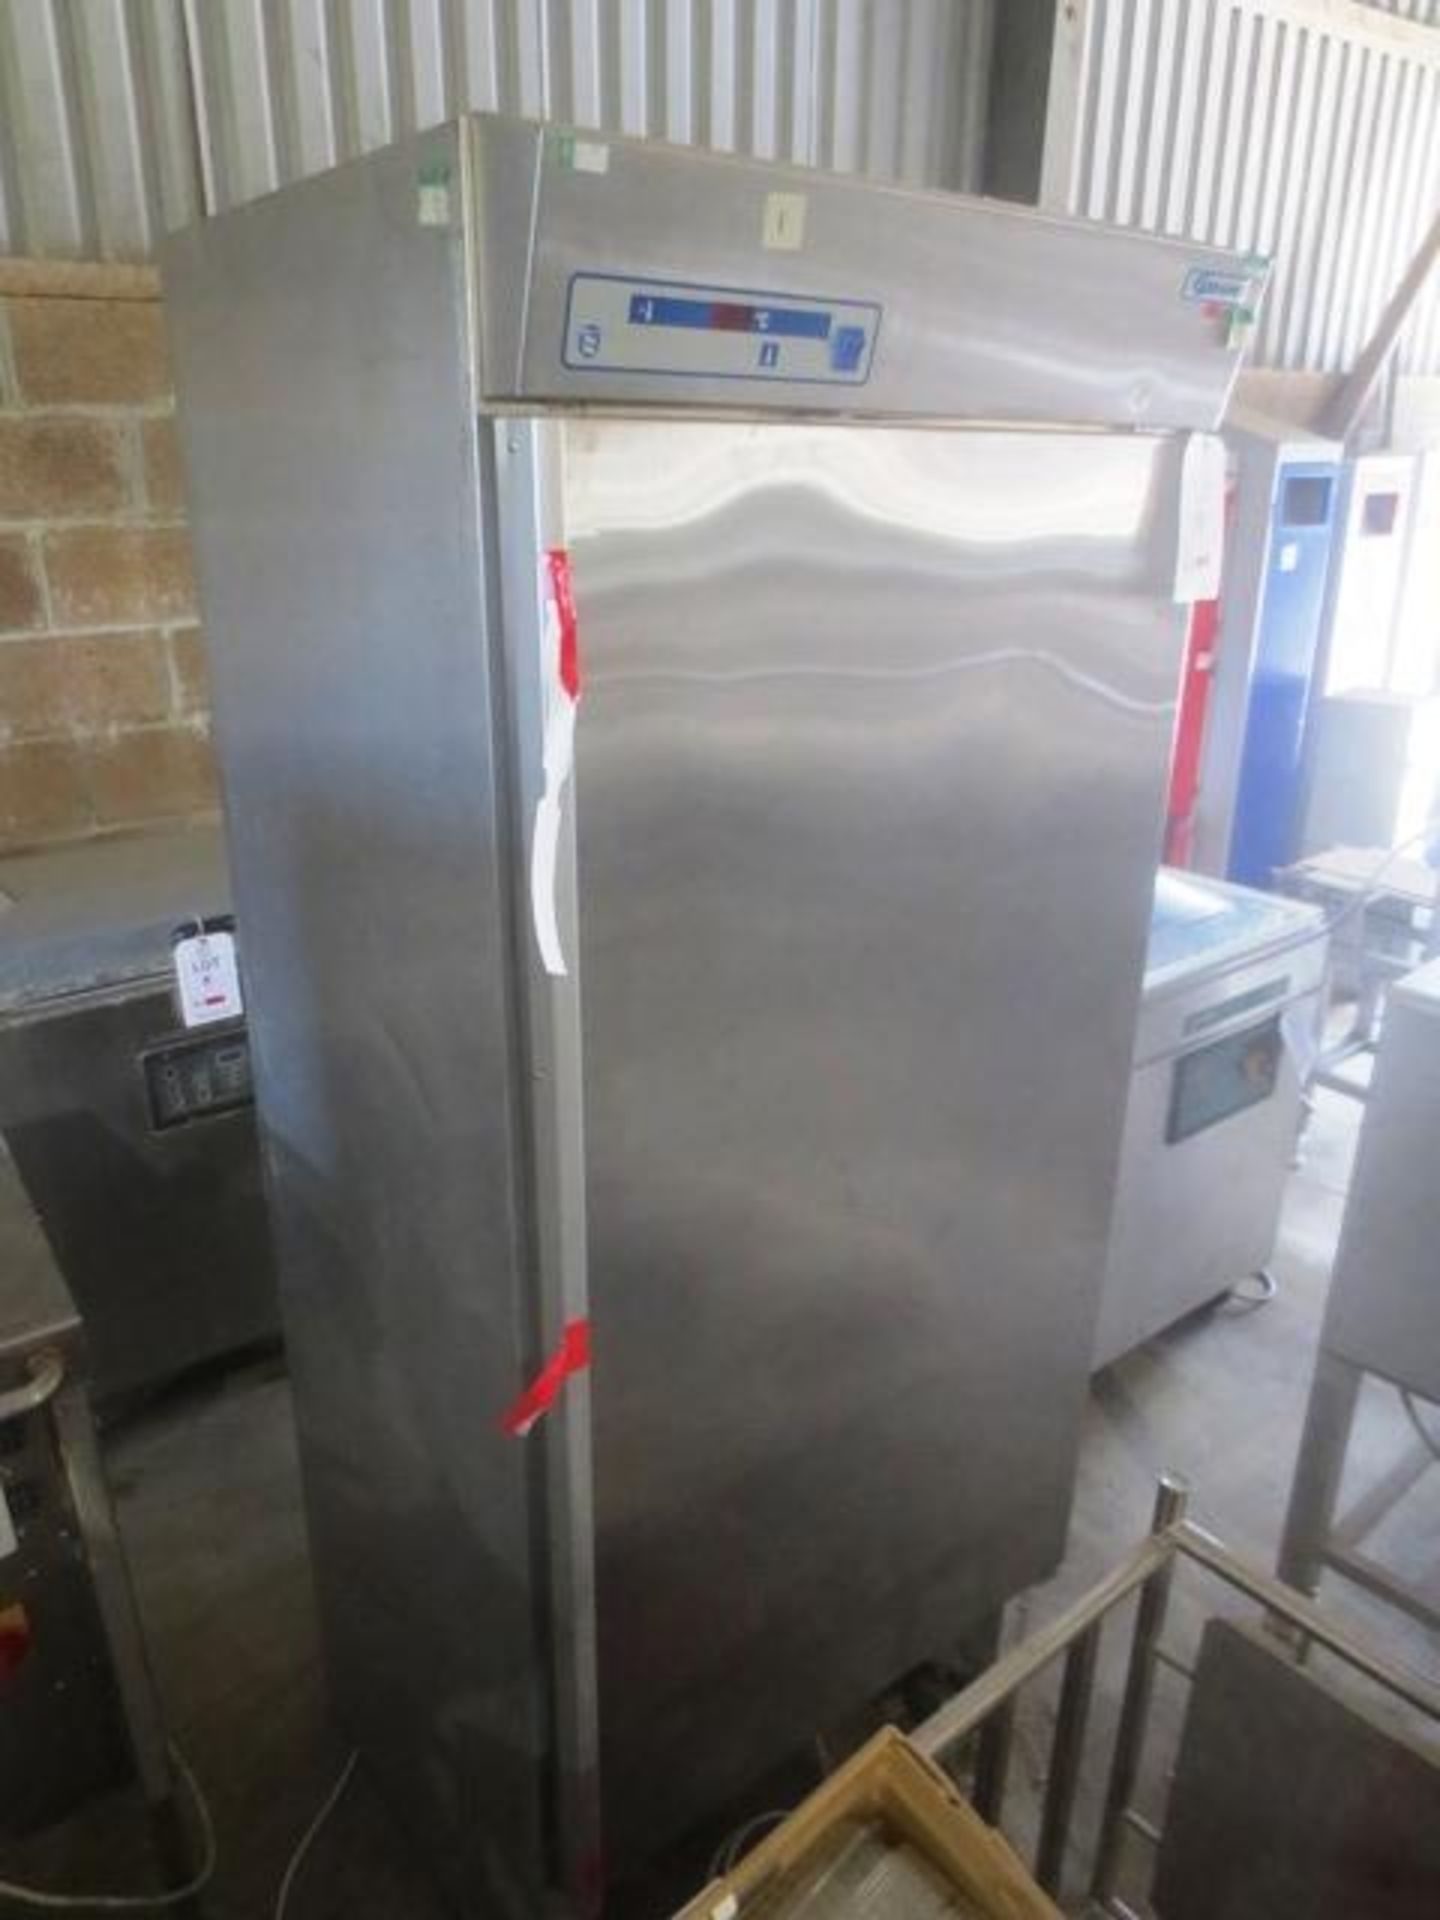 Gram stainless steel refridgerator, model K625 NMRH HAV, serial no: 275, 240v